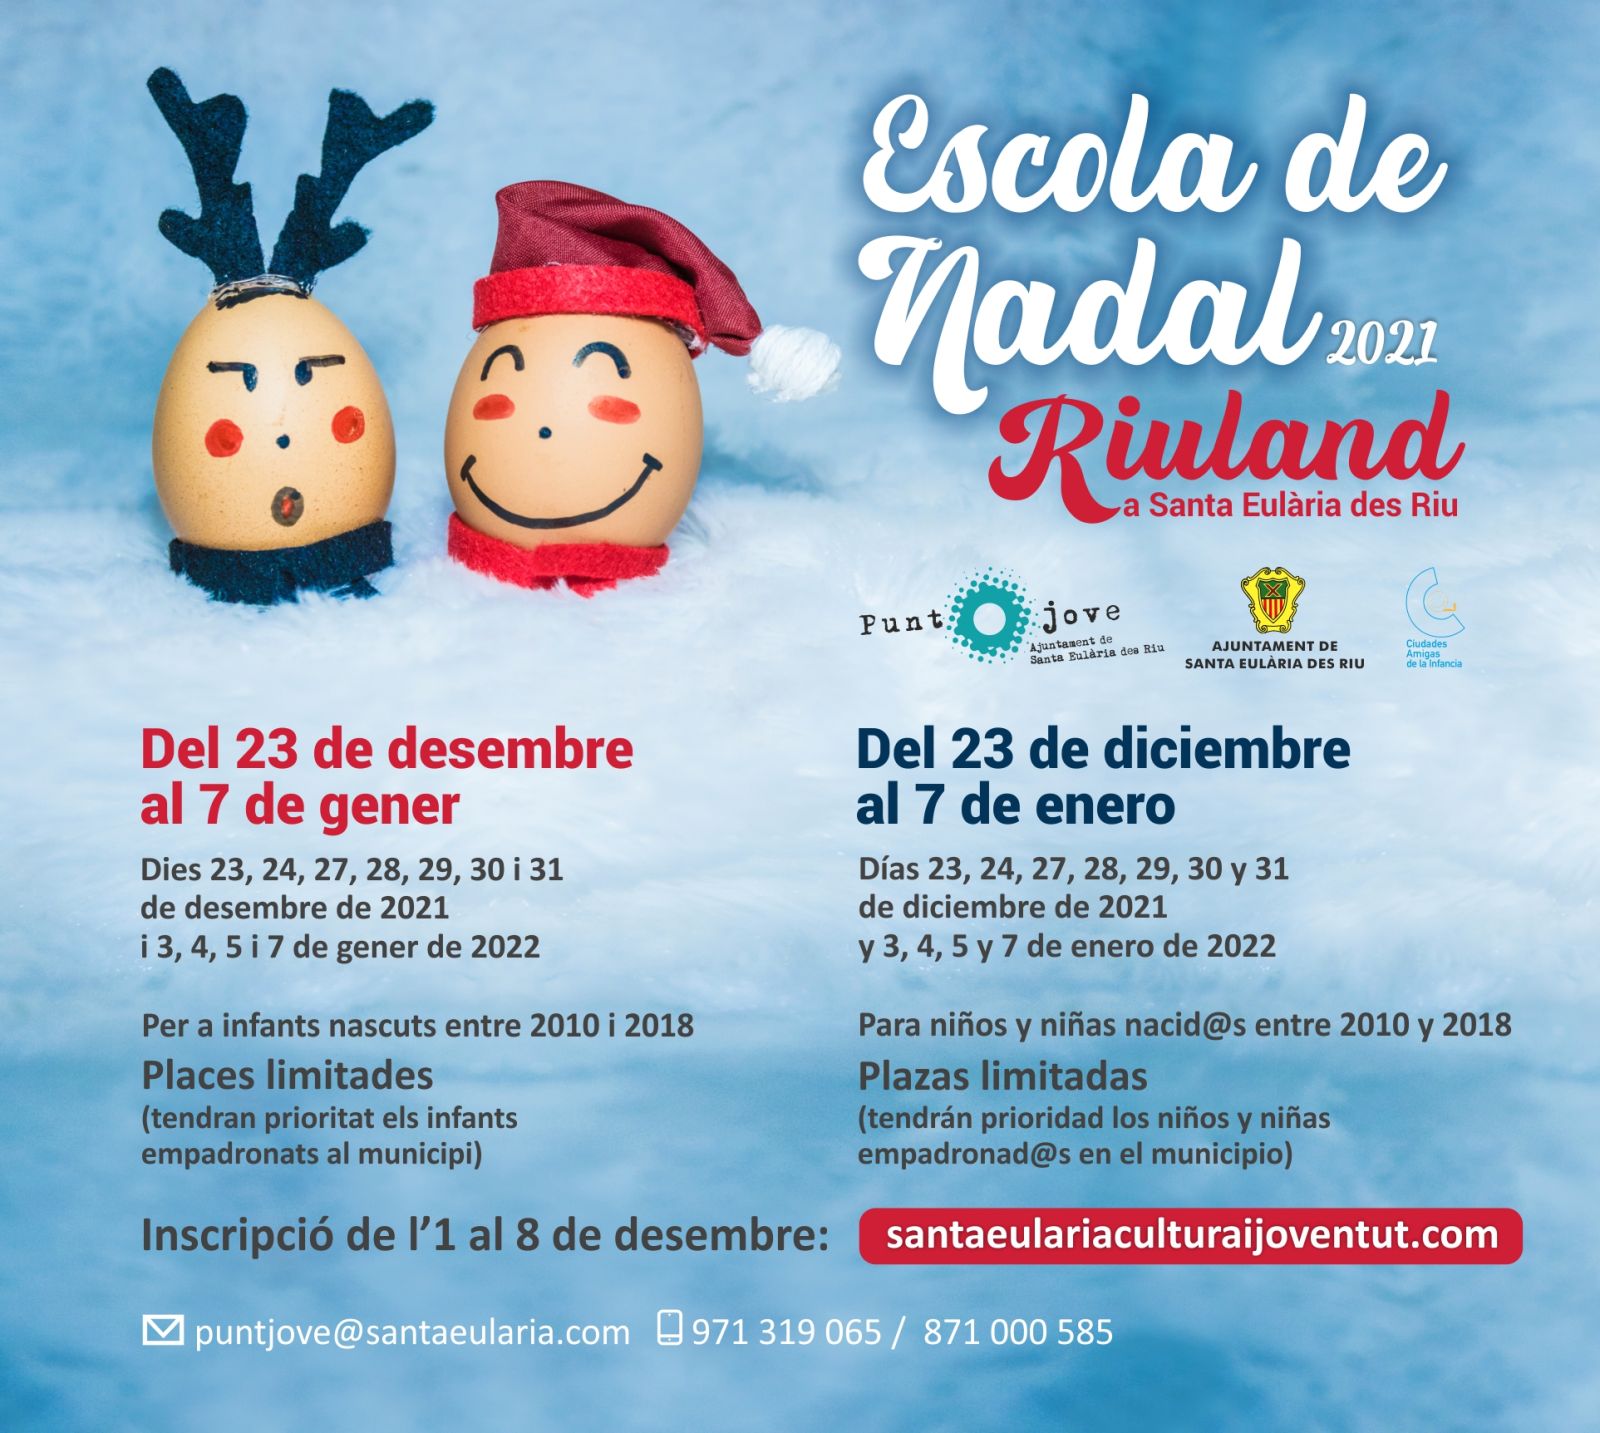 Santa Eulària abre las inscripciones para la segunda edición de la escuela de Navidad ‘Riuland’ el próximo 1 de diciembre